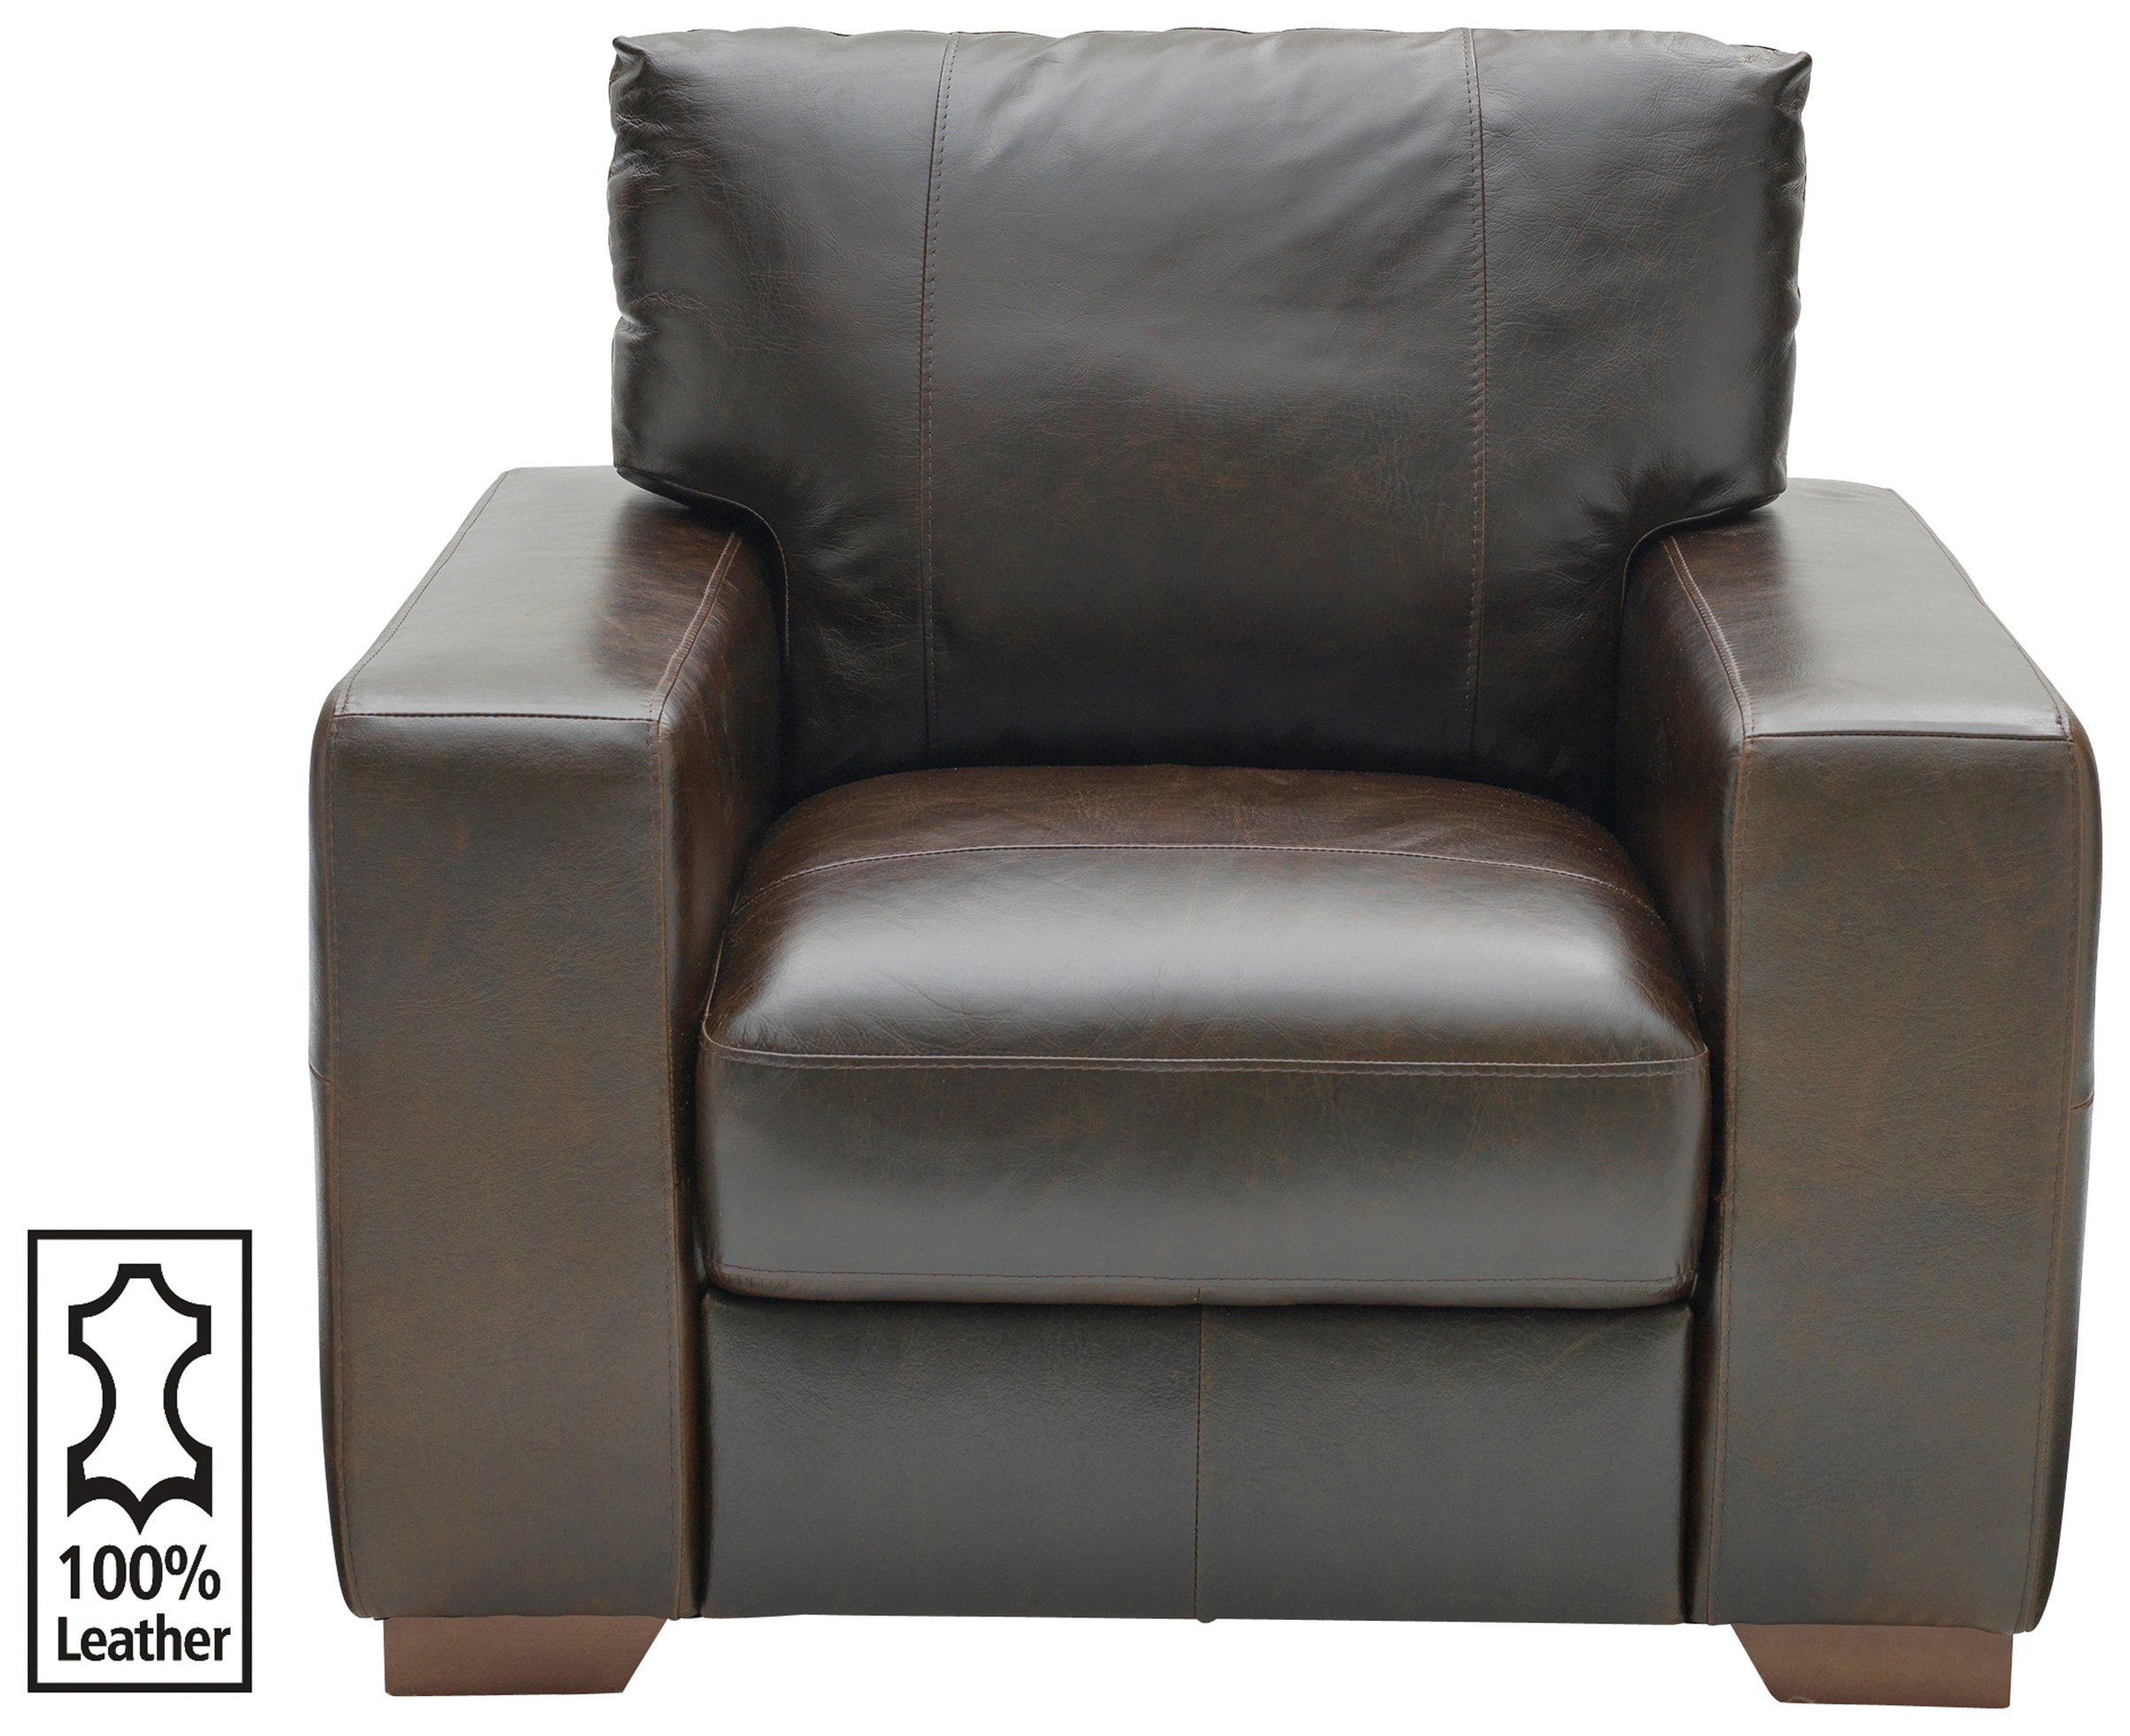 Argos Home - Eton - Leather Chair Reviews